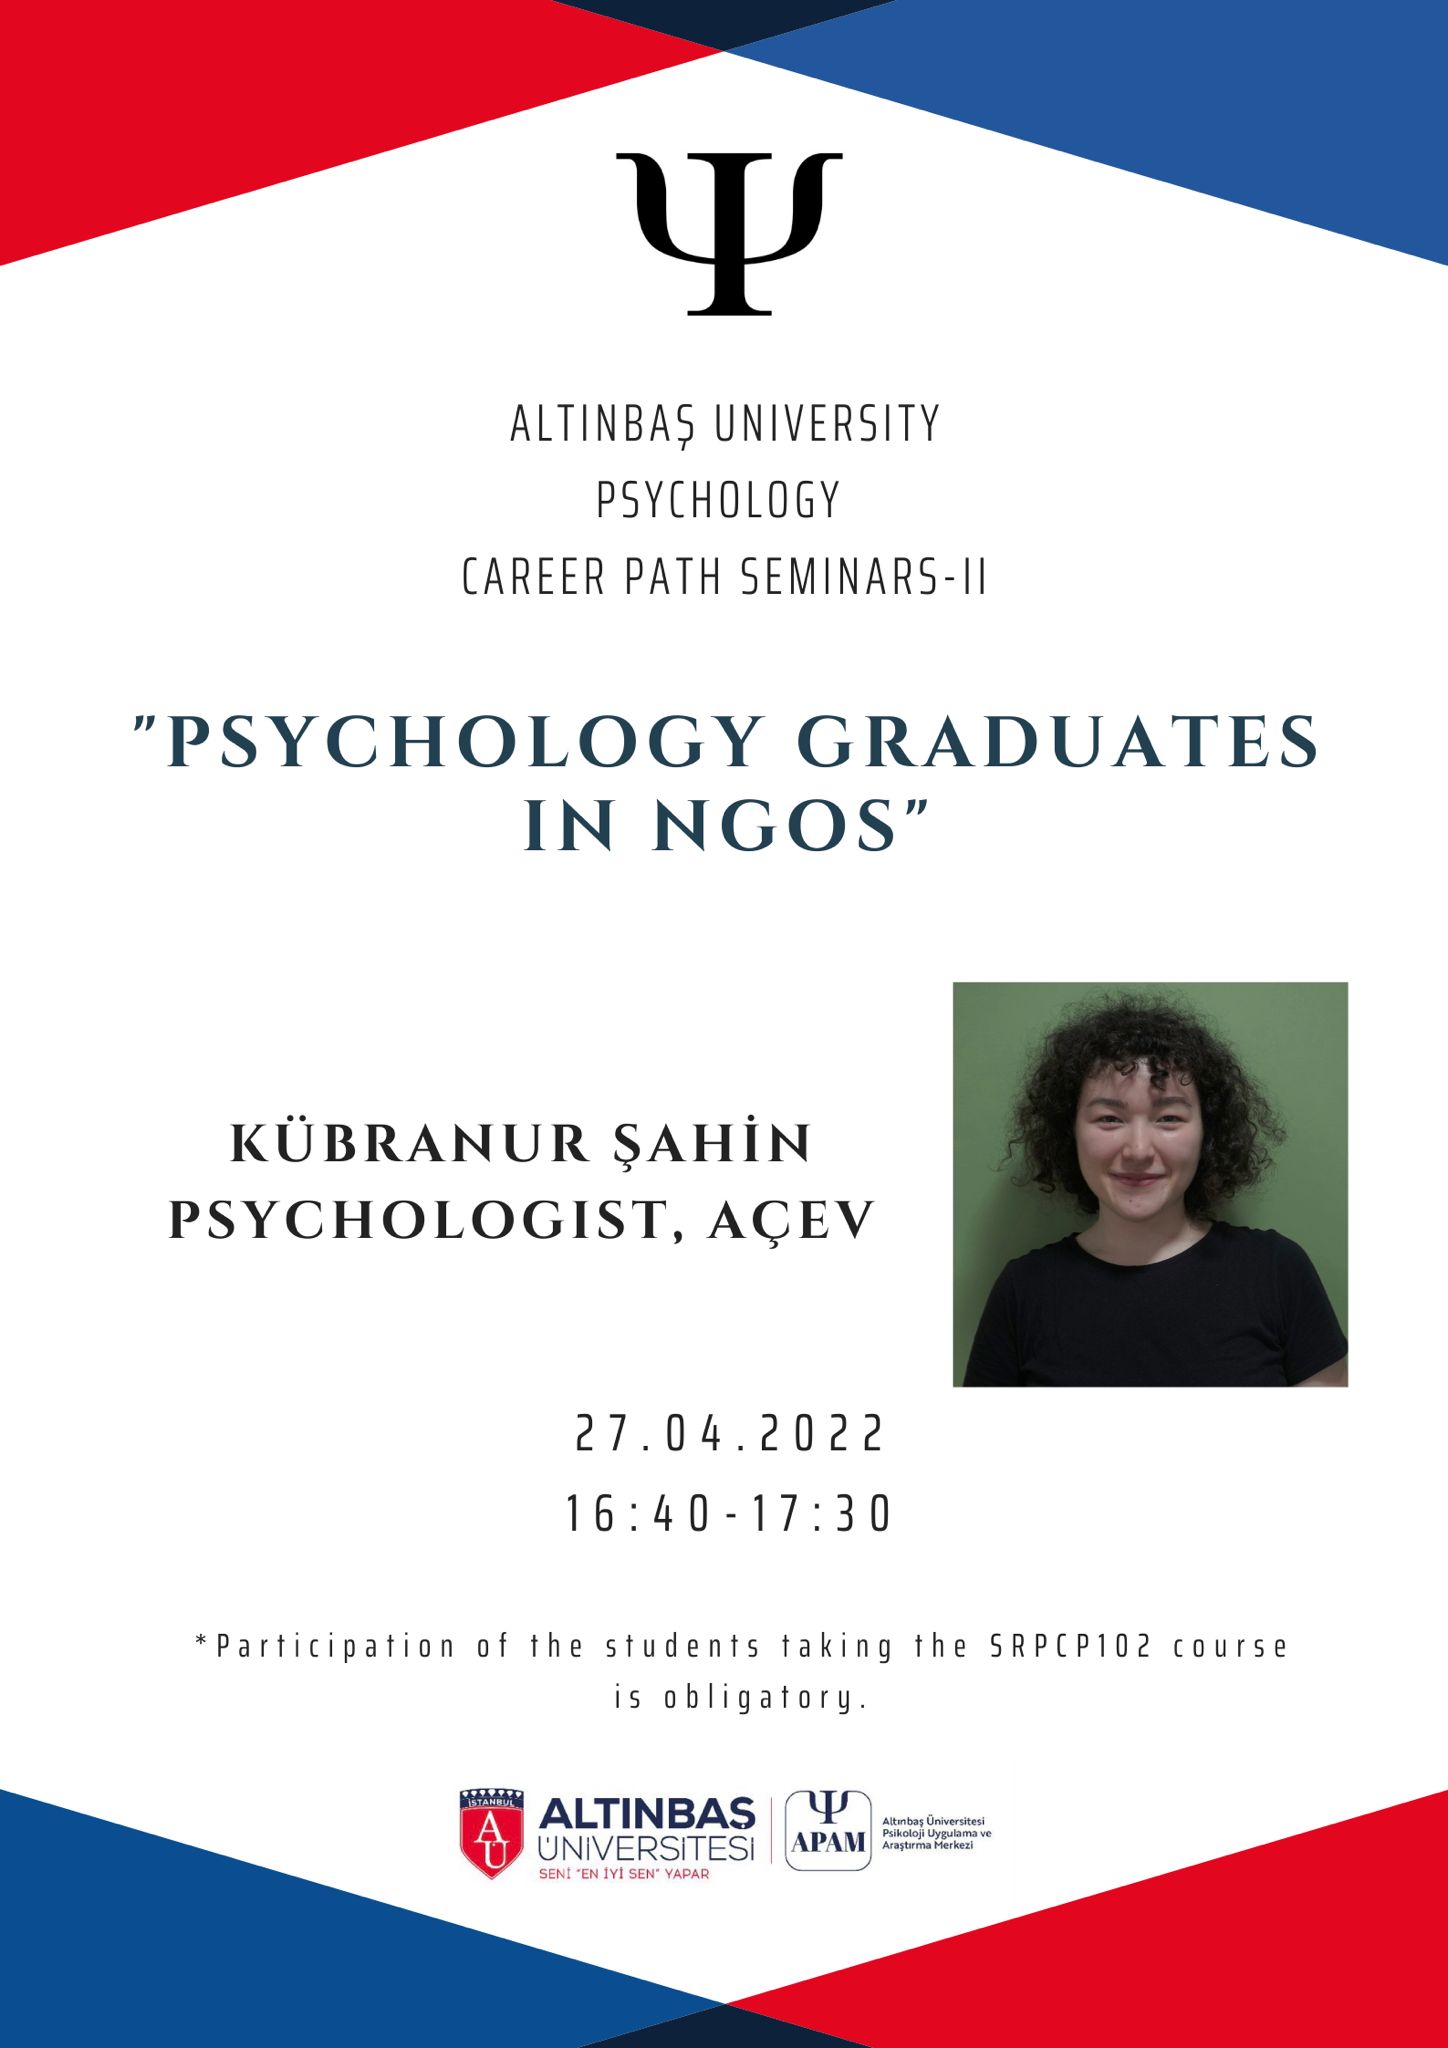 Career Path Seminars-II Psychologist Kübranur Şahin